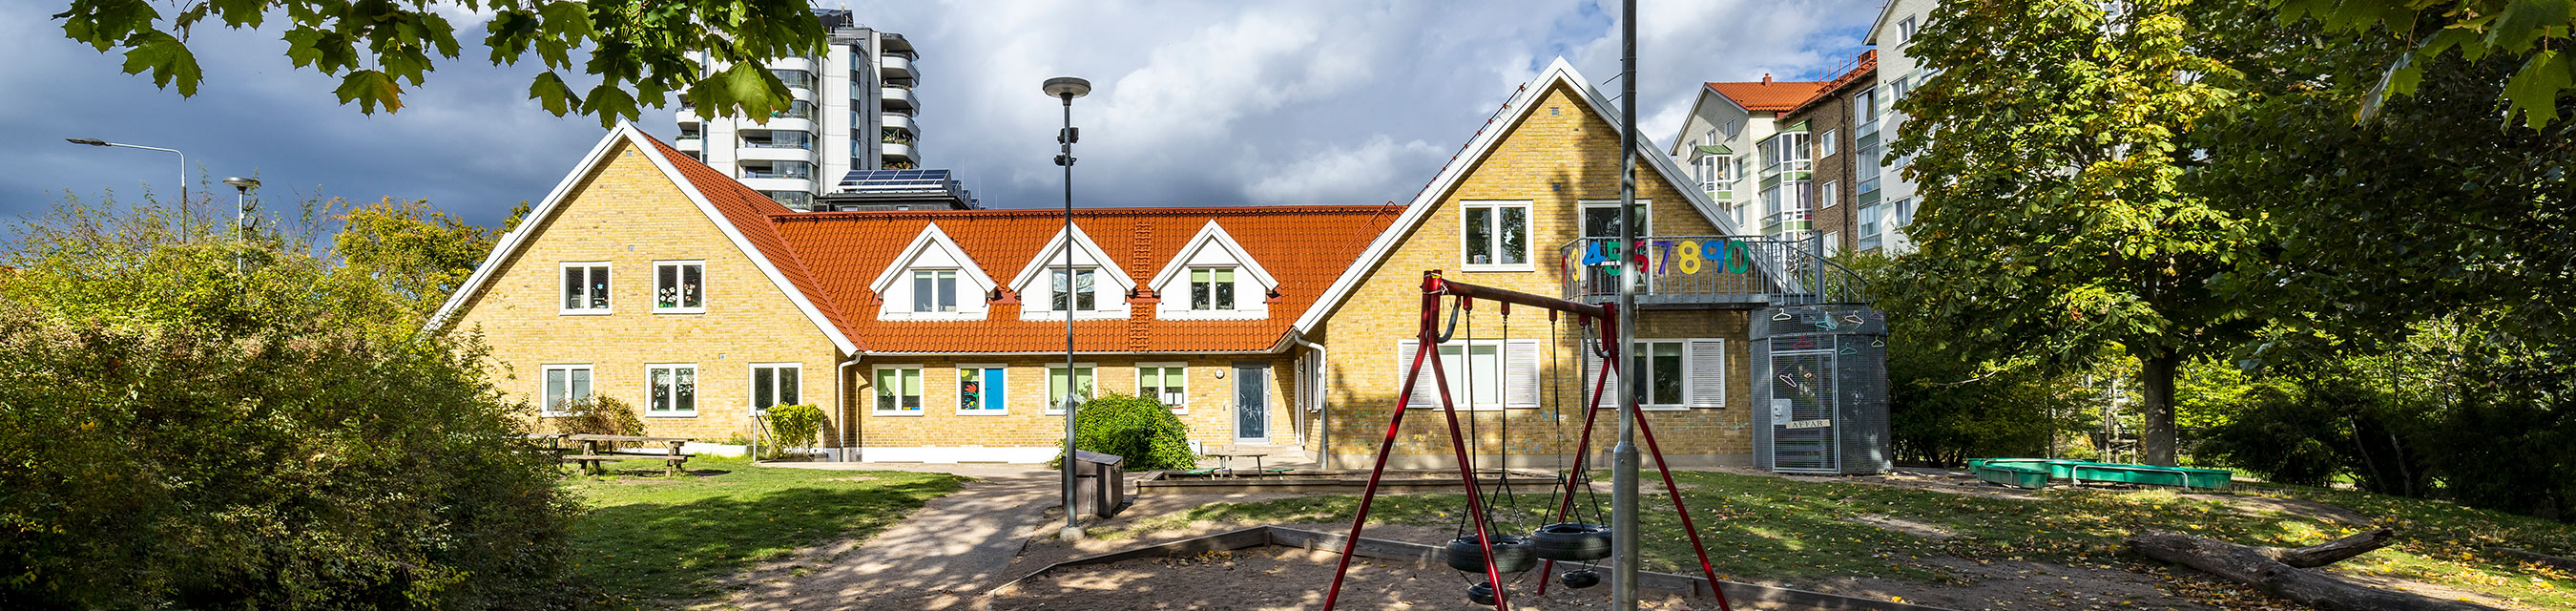 Augustenborgs förskola har verksamhet i två olika byggnader som ligger i anslutning till varandra.